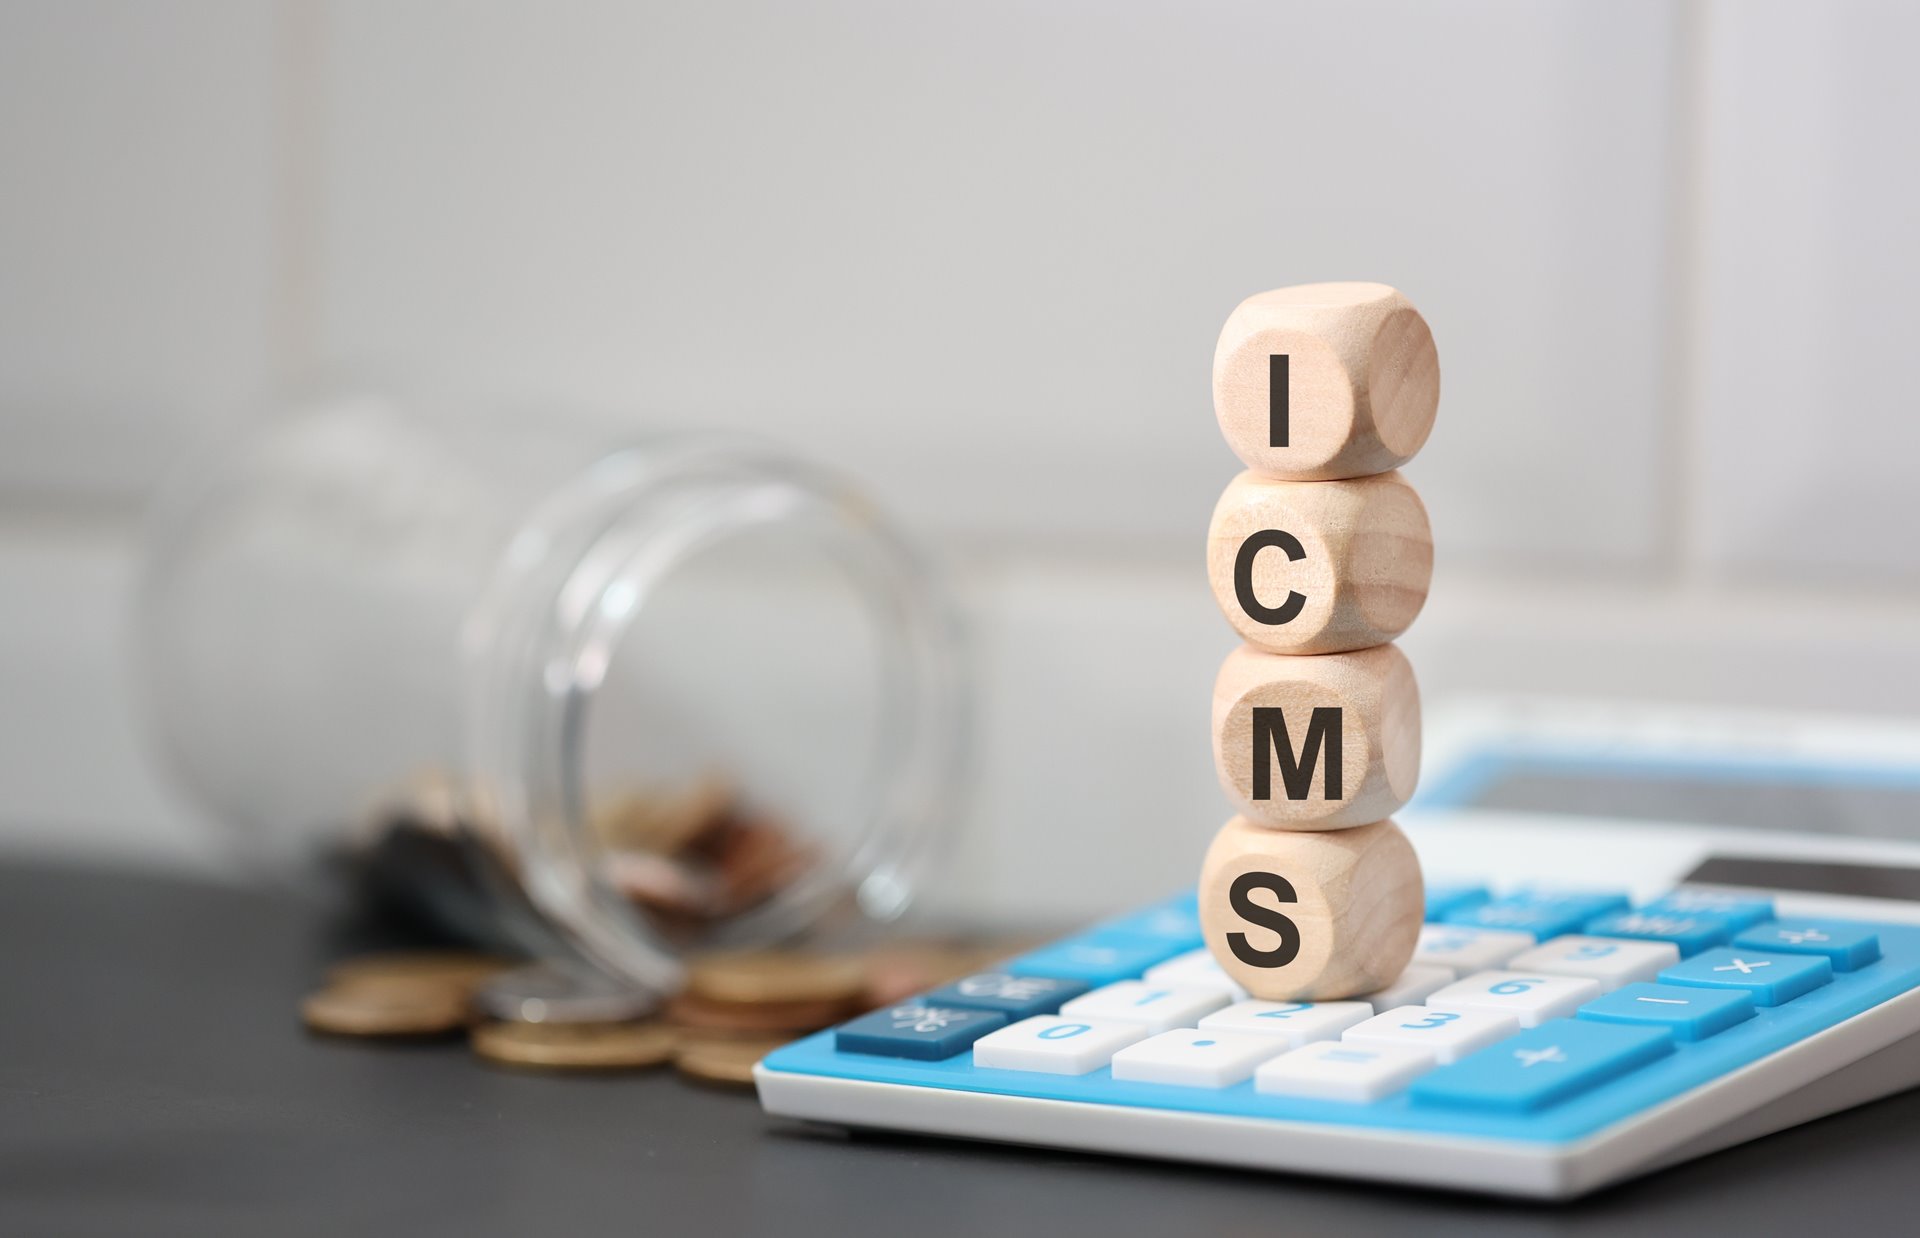 Empresas podem começar a regularizar ajuda financeira indevida do ICMS